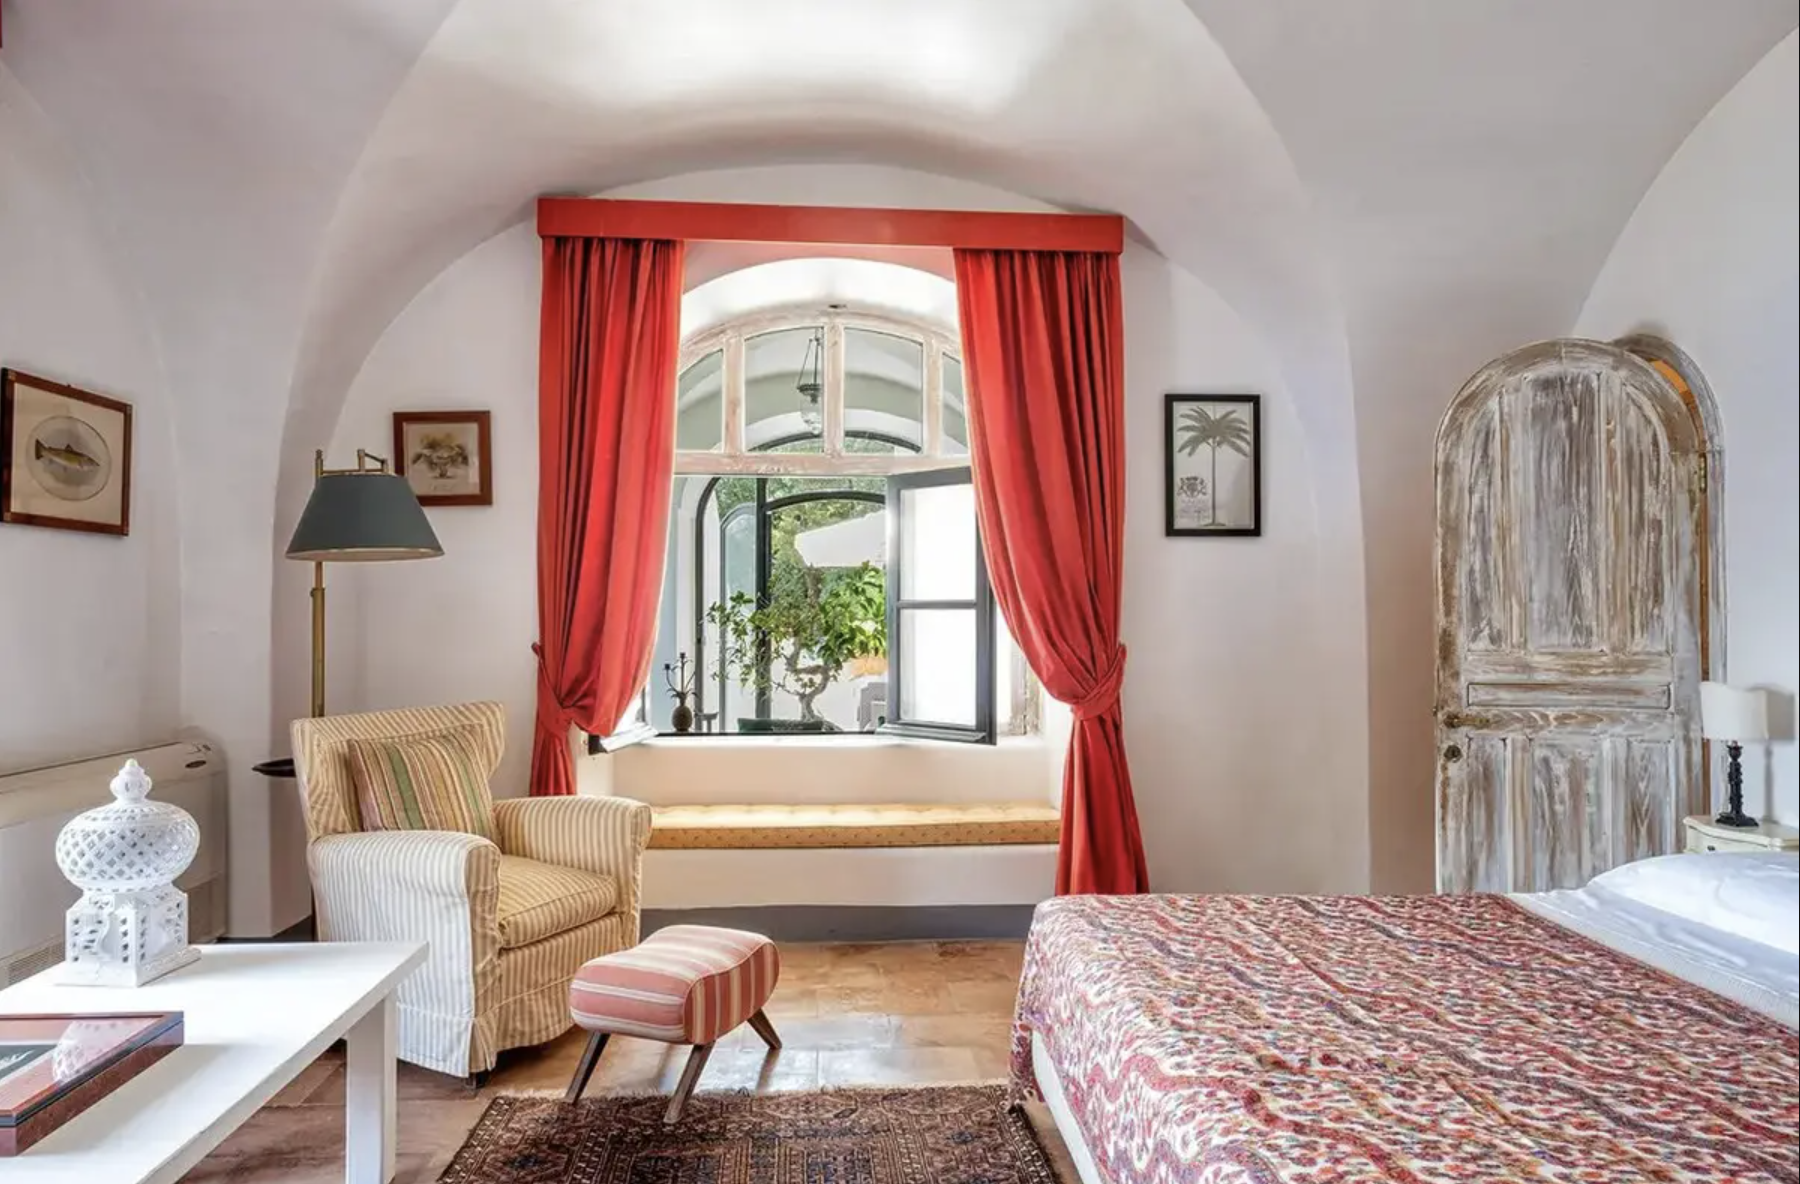 Francis York Villa Aiano Exclusive Luxury Villa Rental in Capri Slim Aarons 21.png